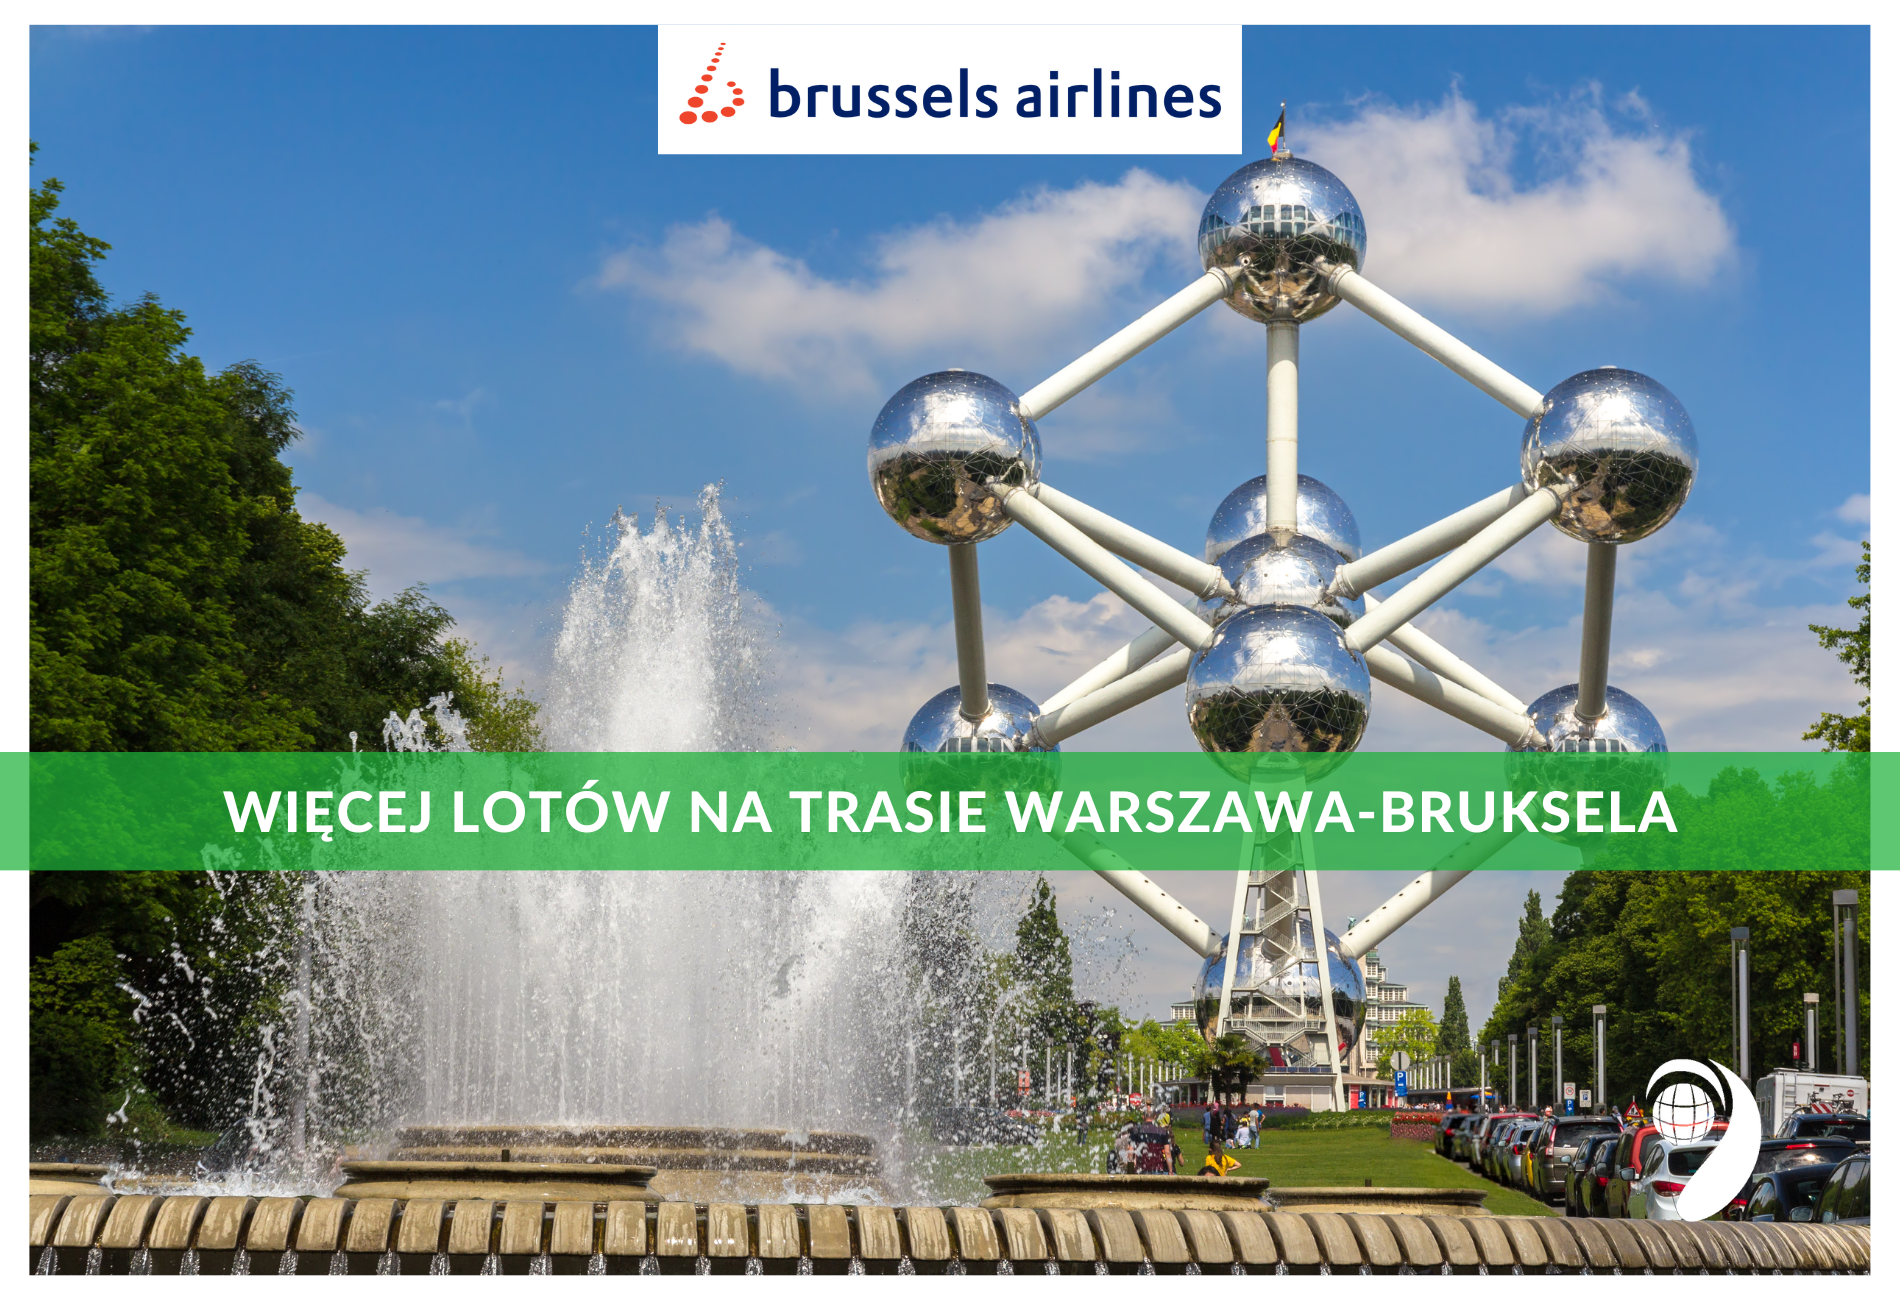 Więcej lotów Warszawa-Bruksela: 12 razy tygodniowo z Brussels Airlines!